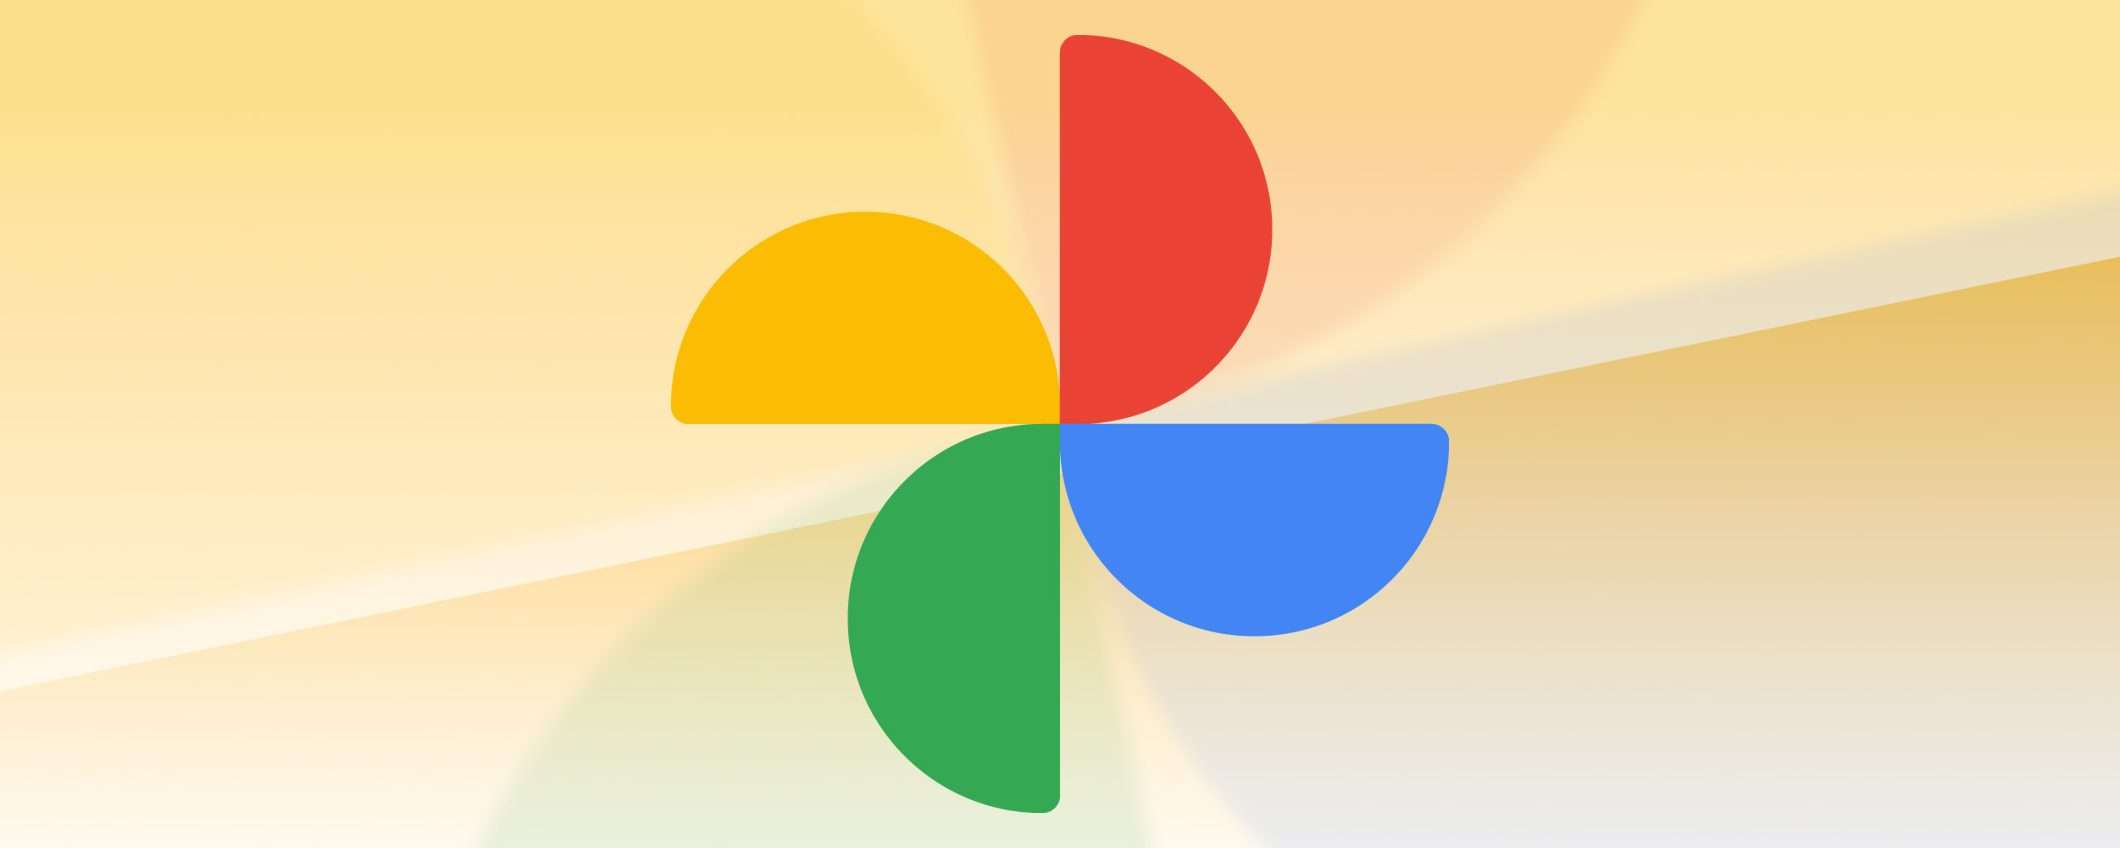 Google Foto: un pulsante per migliorare i video